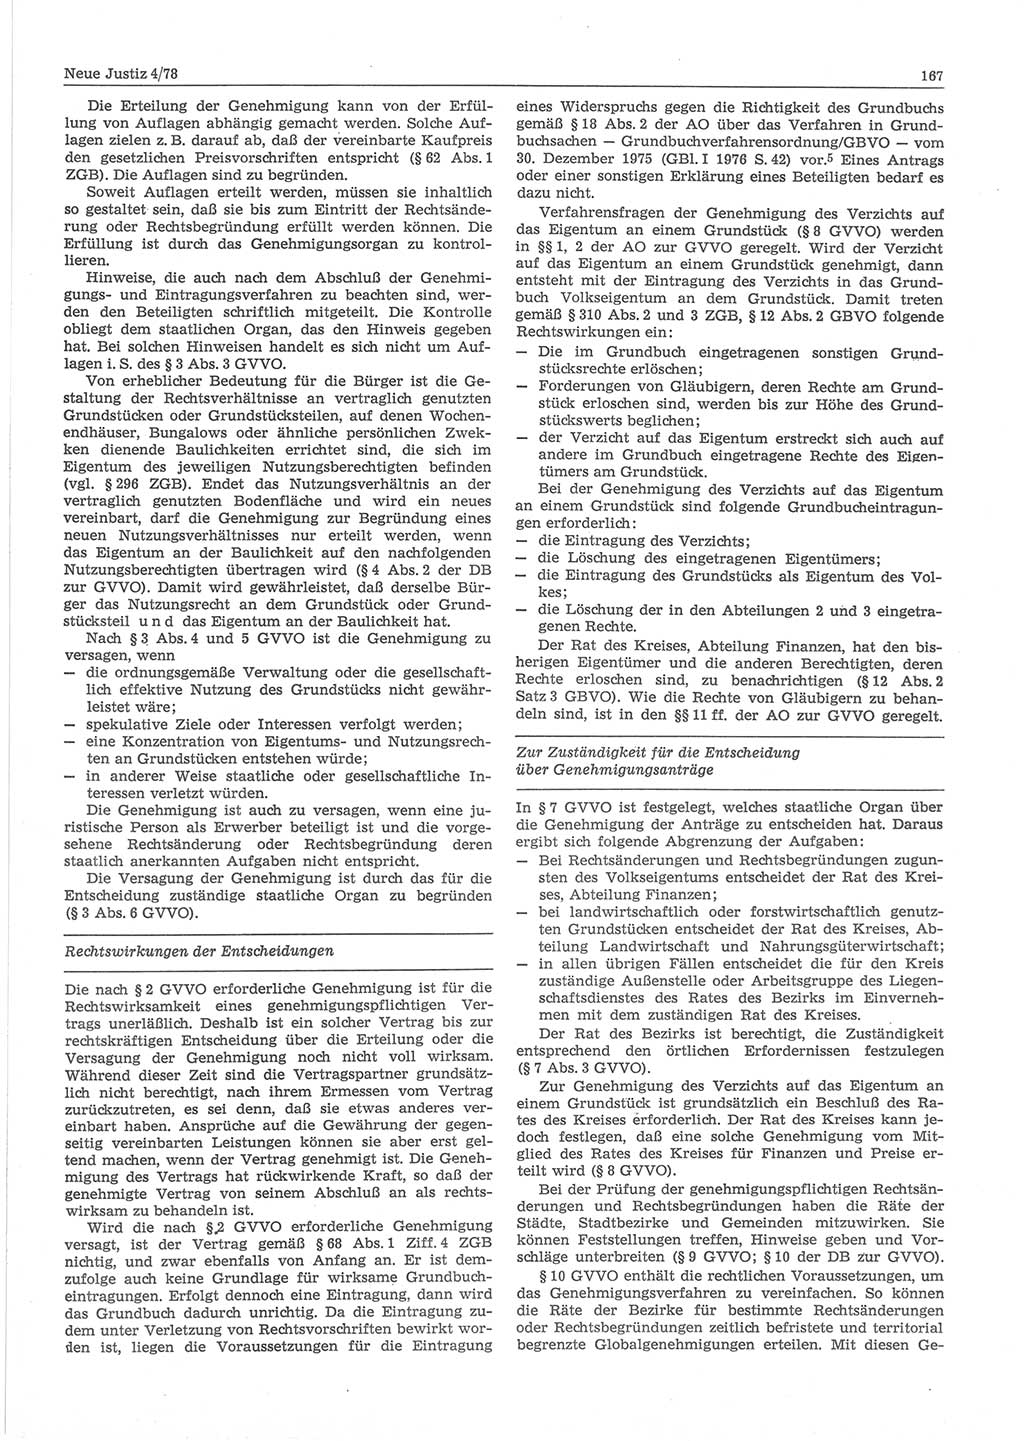 Neue Justiz (NJ), Zeitschrift für sozialistisches Recht und Gesetzlichkeit [Deutsche Demokratische Republik (DDR)], 32. Jahrgang 1978, Seite 167 (NJ DDR 1978, S. 167)